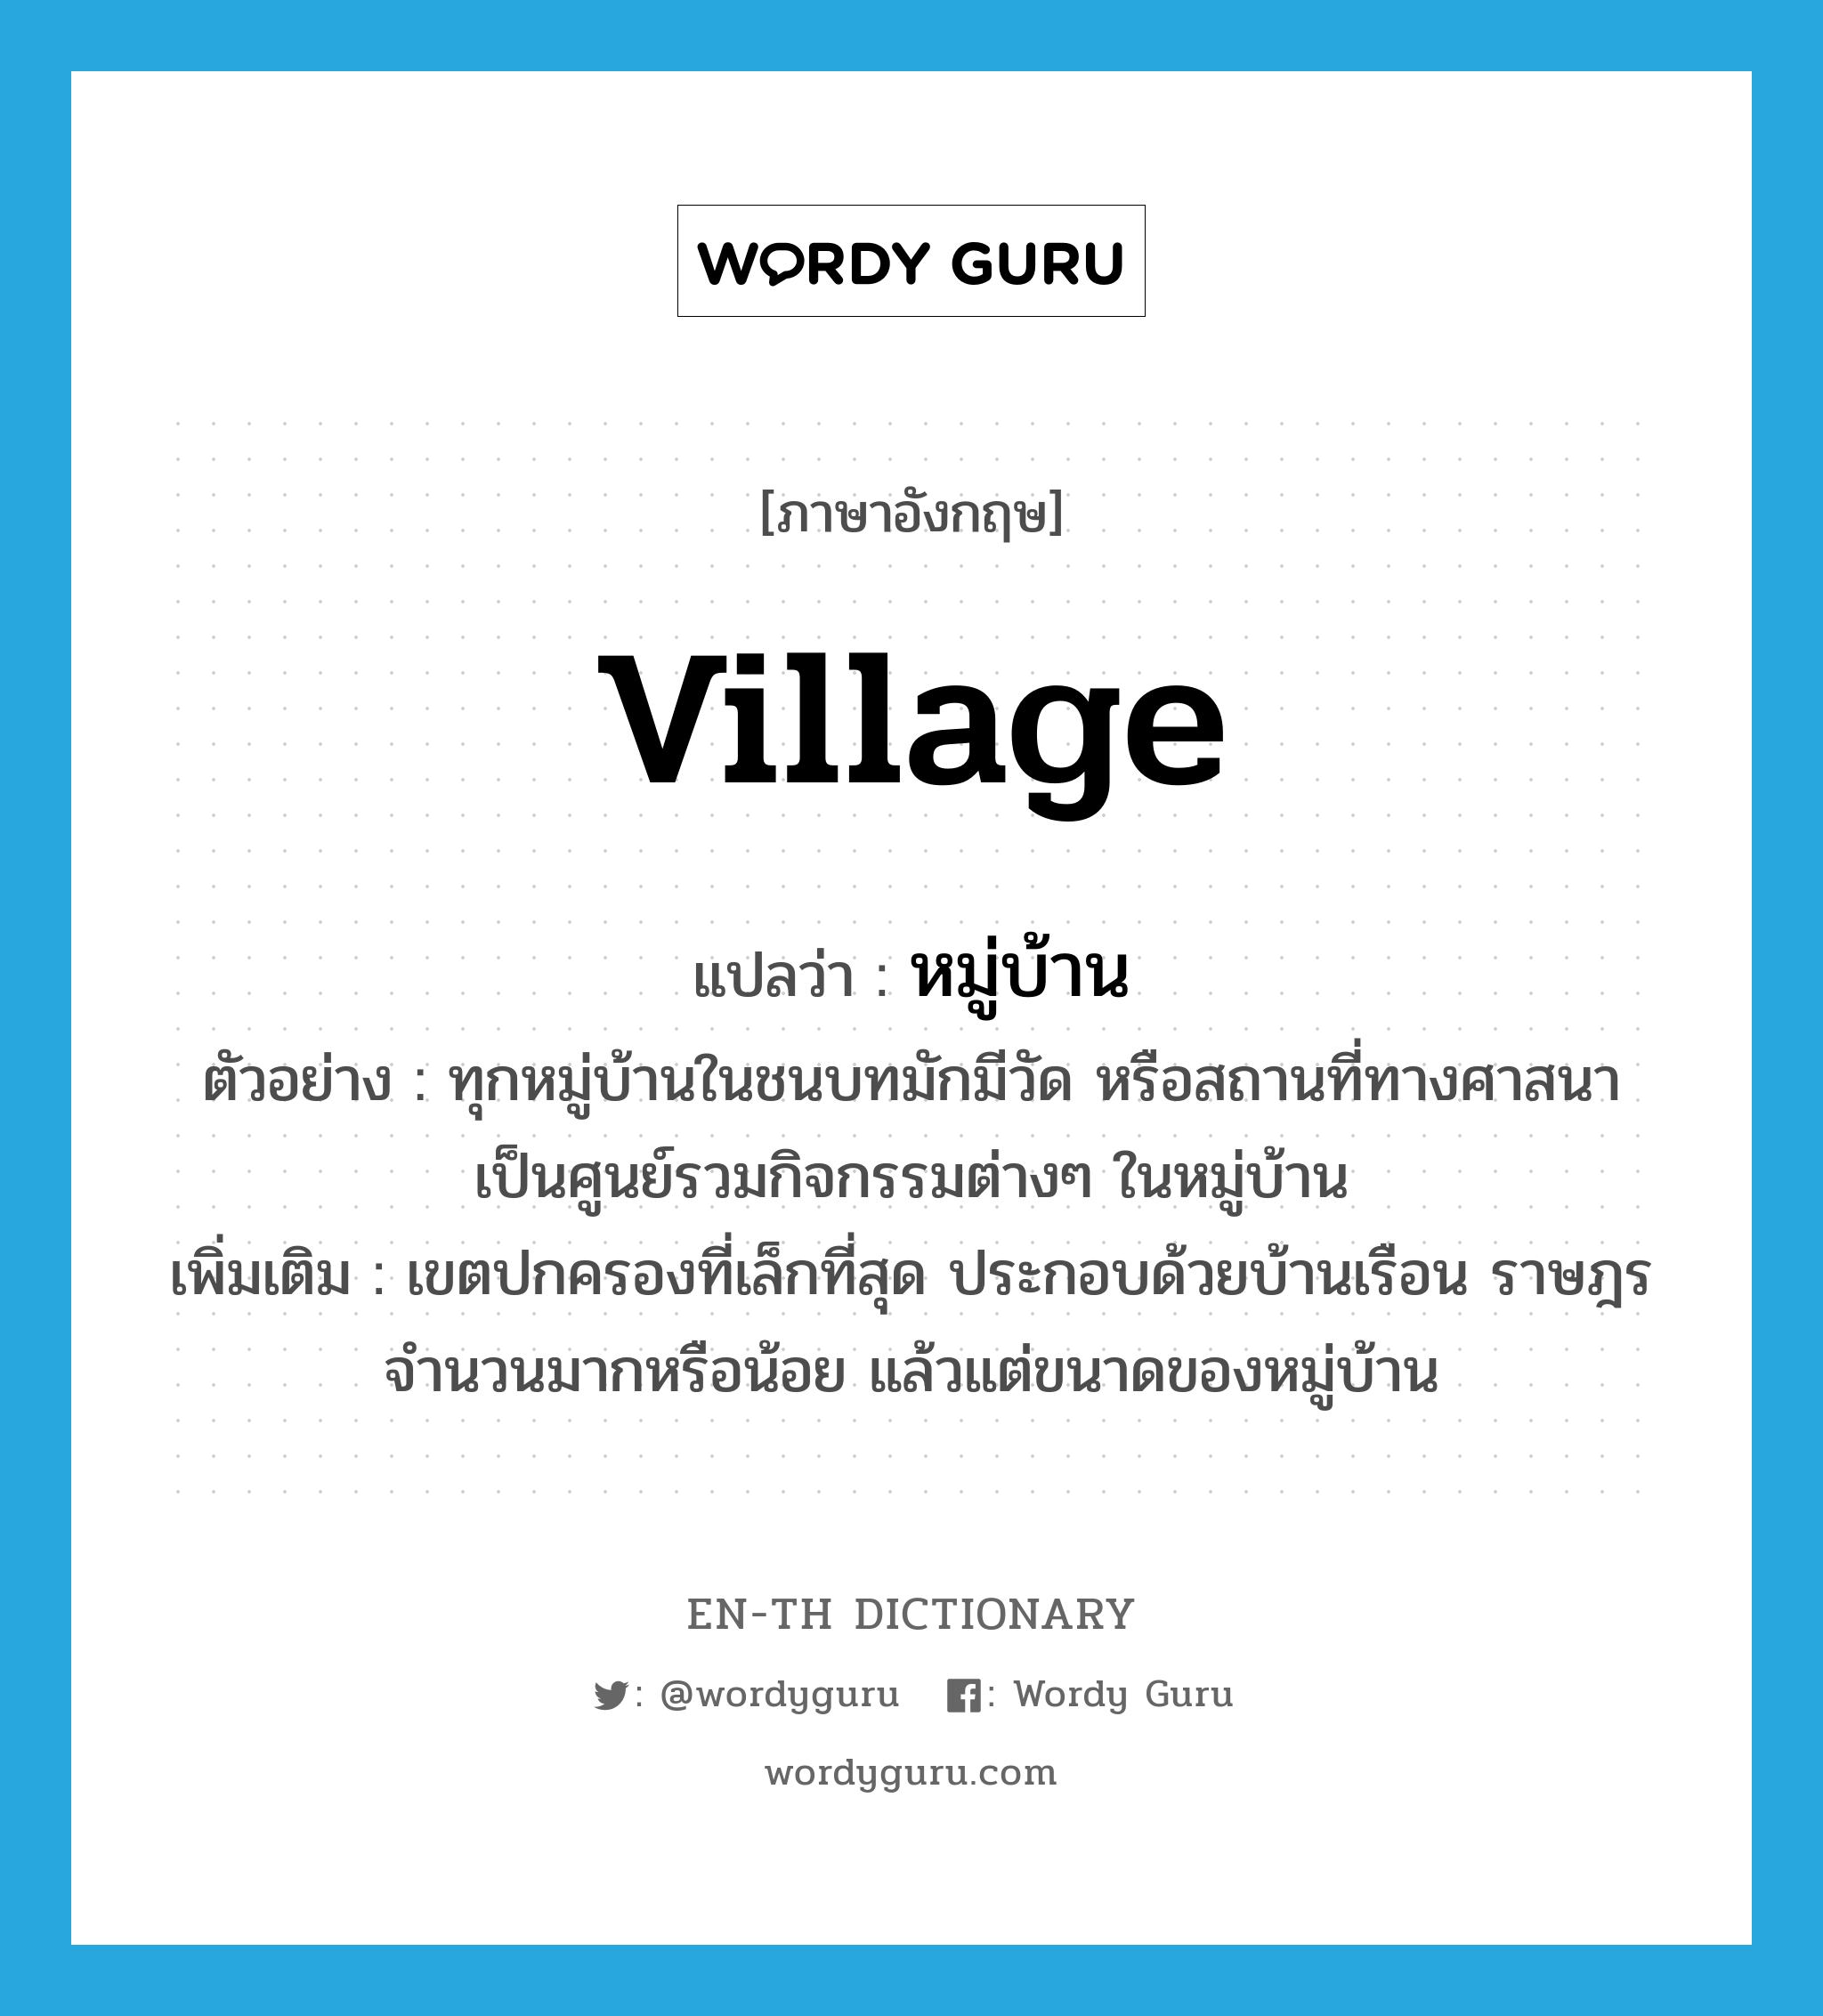 village แปลว่า?, คำศัพท์ภาษาอังกฤษ village แปลว่า หมู่บ้าน ประเภท N ตัวอย่าง ทุกหมู่บ้านในชนบทมักมีวัด หรือสถานที่ทางศาสนา เป็นศูนย์รวมกิจกรรมต่างๆ ในหมู่บ้าน เพิ่มเติม เขตปกครองที่เล็กที่สุด ประกอบด้วยบ้านเรือน ราษฎรจำนวนมากหรือน้อย แล้วแต่ขนาดของหมู่บ้าน หมวด N